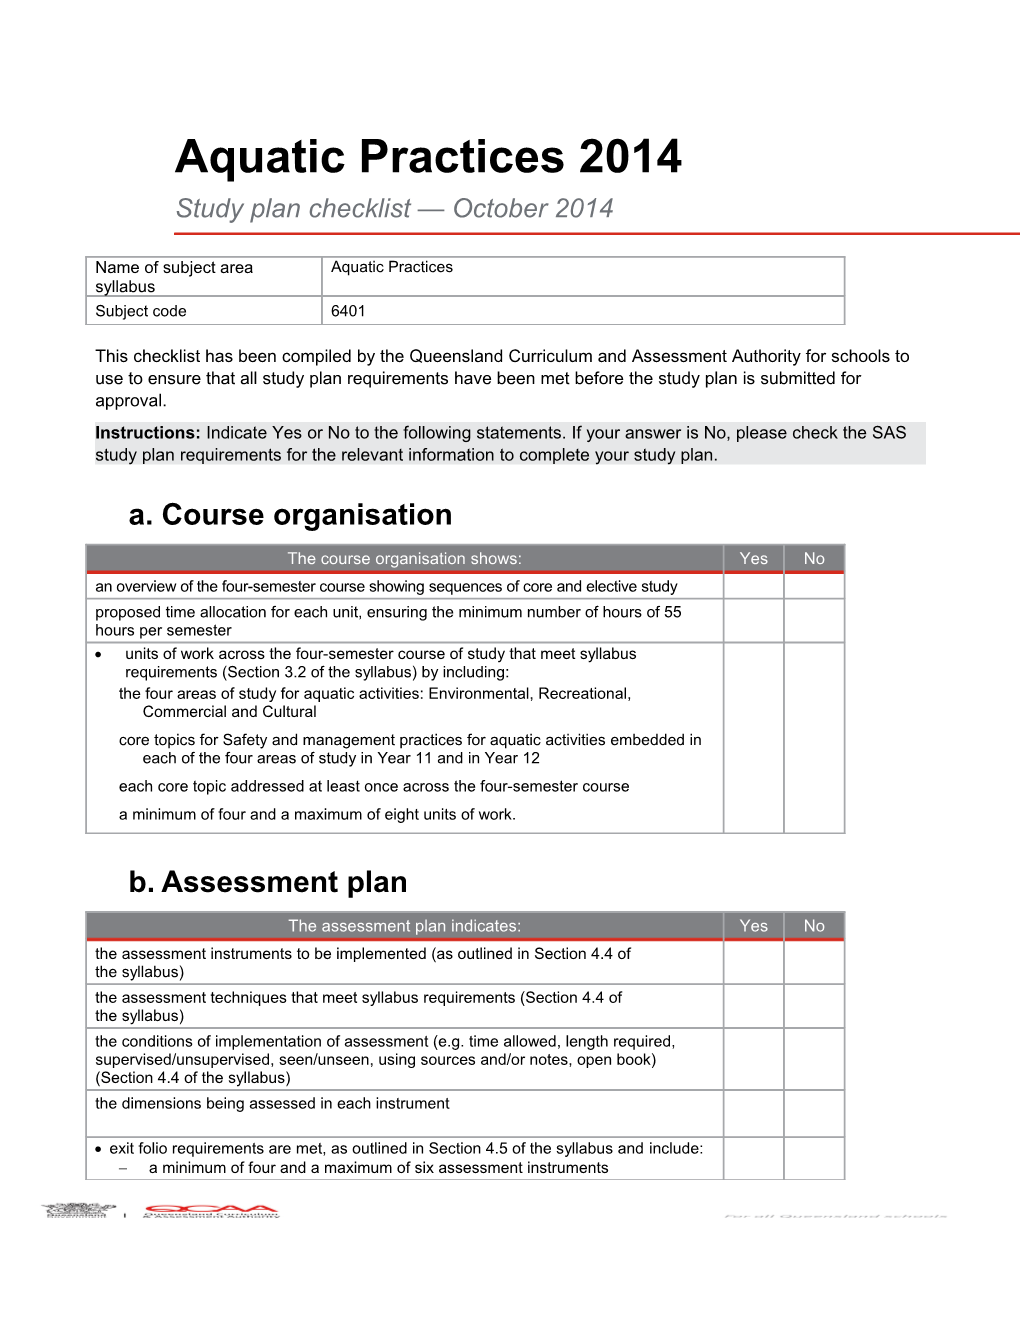 Aquatic Practices 2014 Study Plan Checklist October 2014